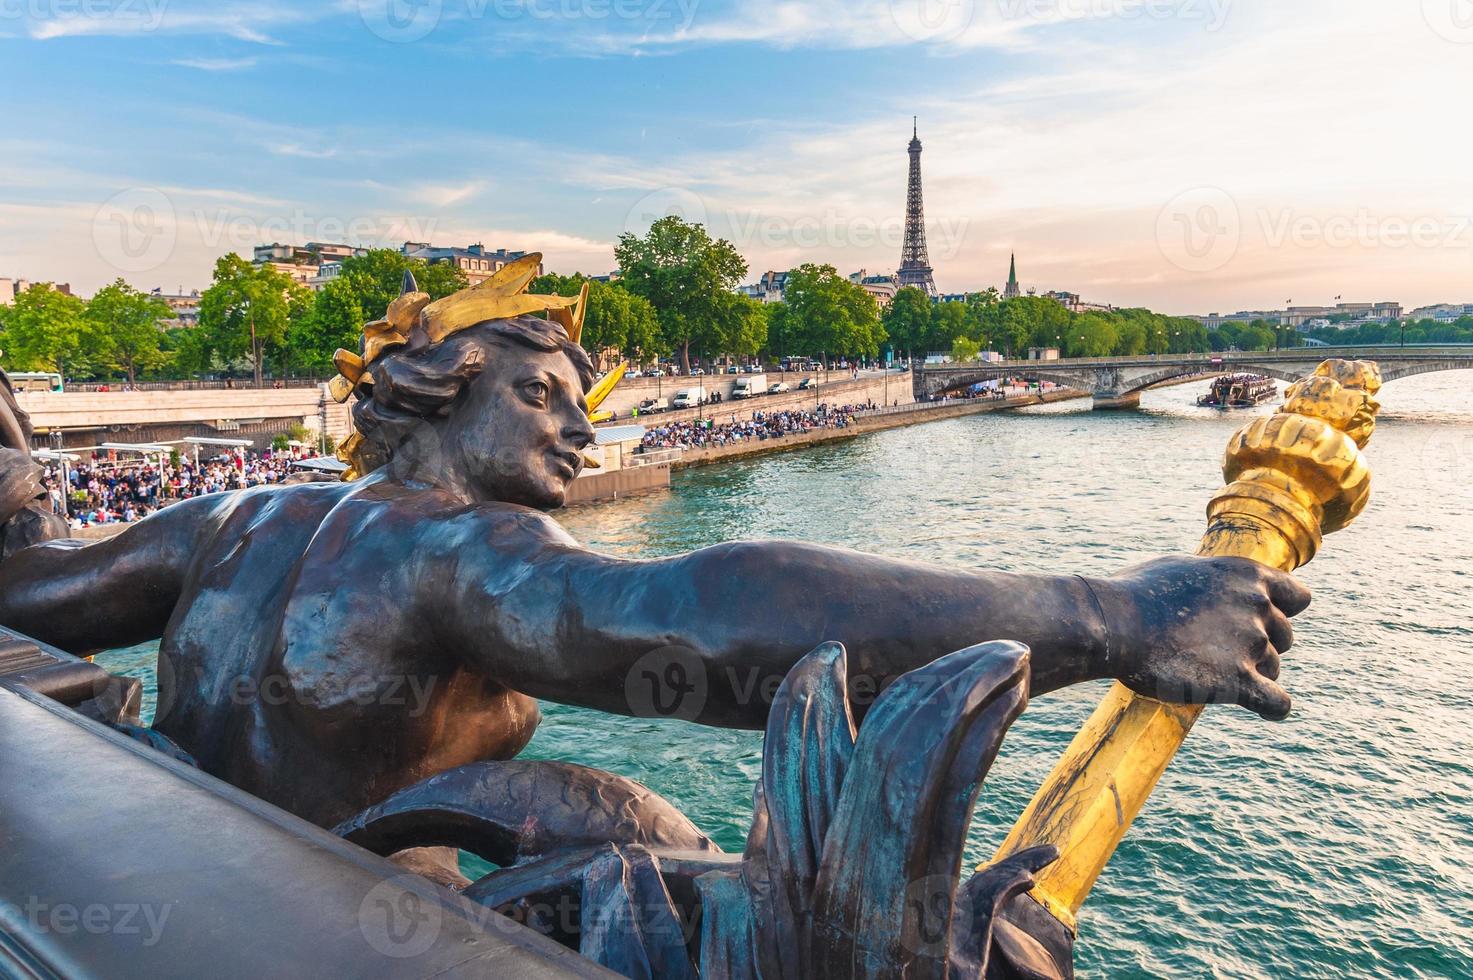 Paisaje sobre el río Sena desde el puente Alejandro III, París, Francia foto